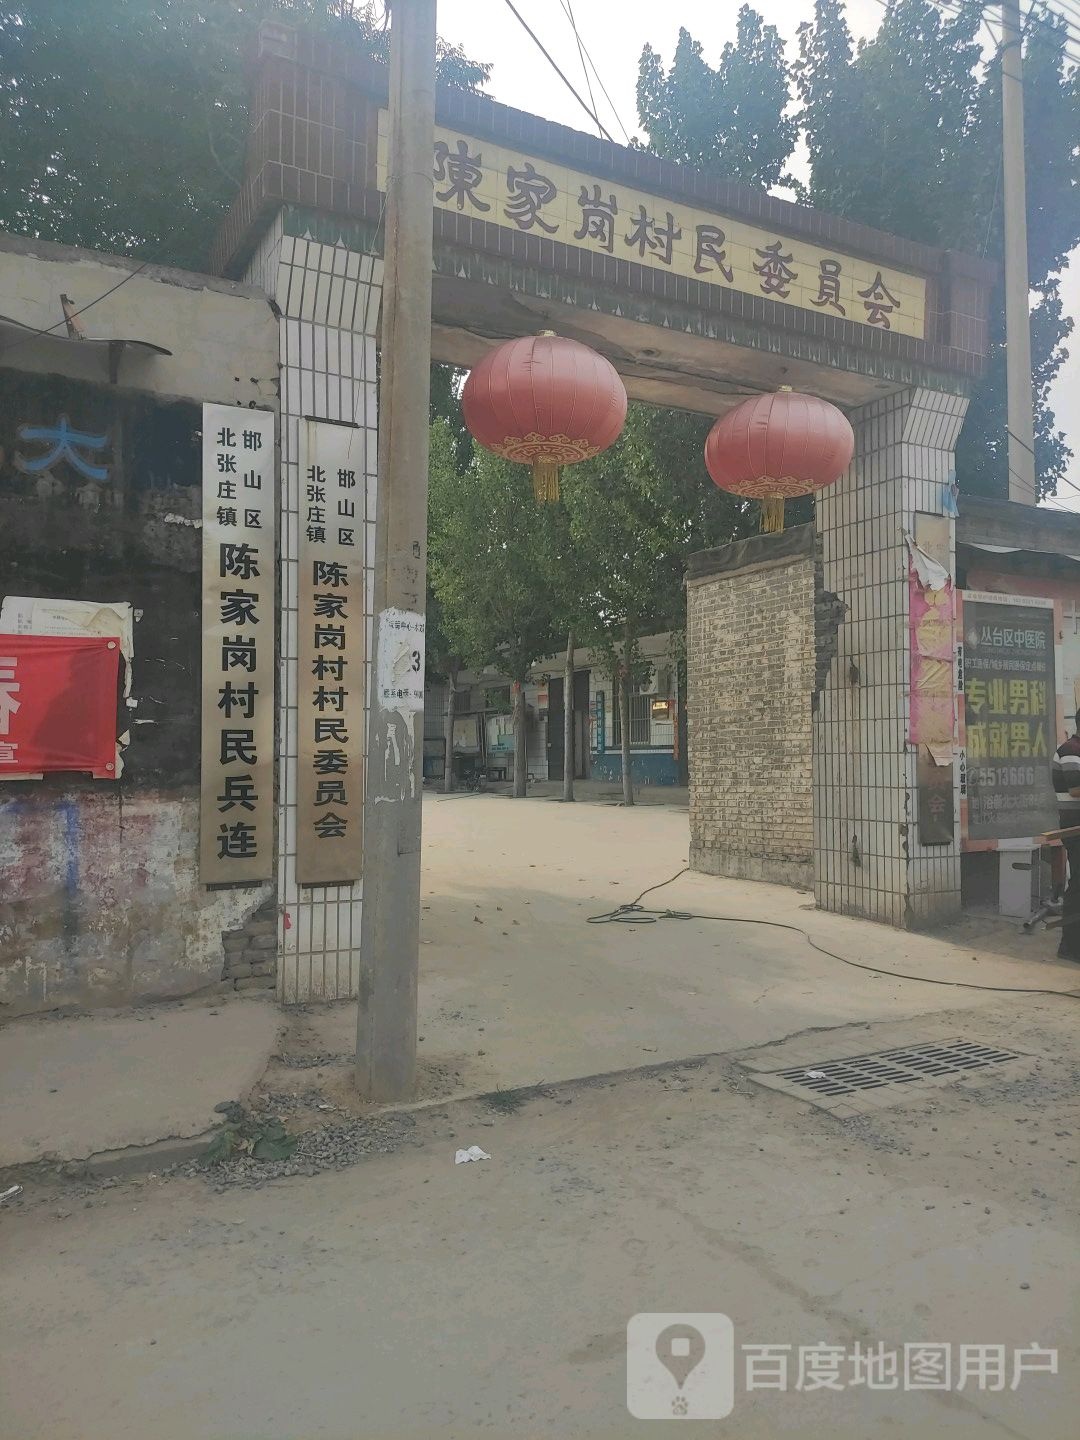 河北省邯郸市邯山区水源路与向阳街交叉路口往南约80米